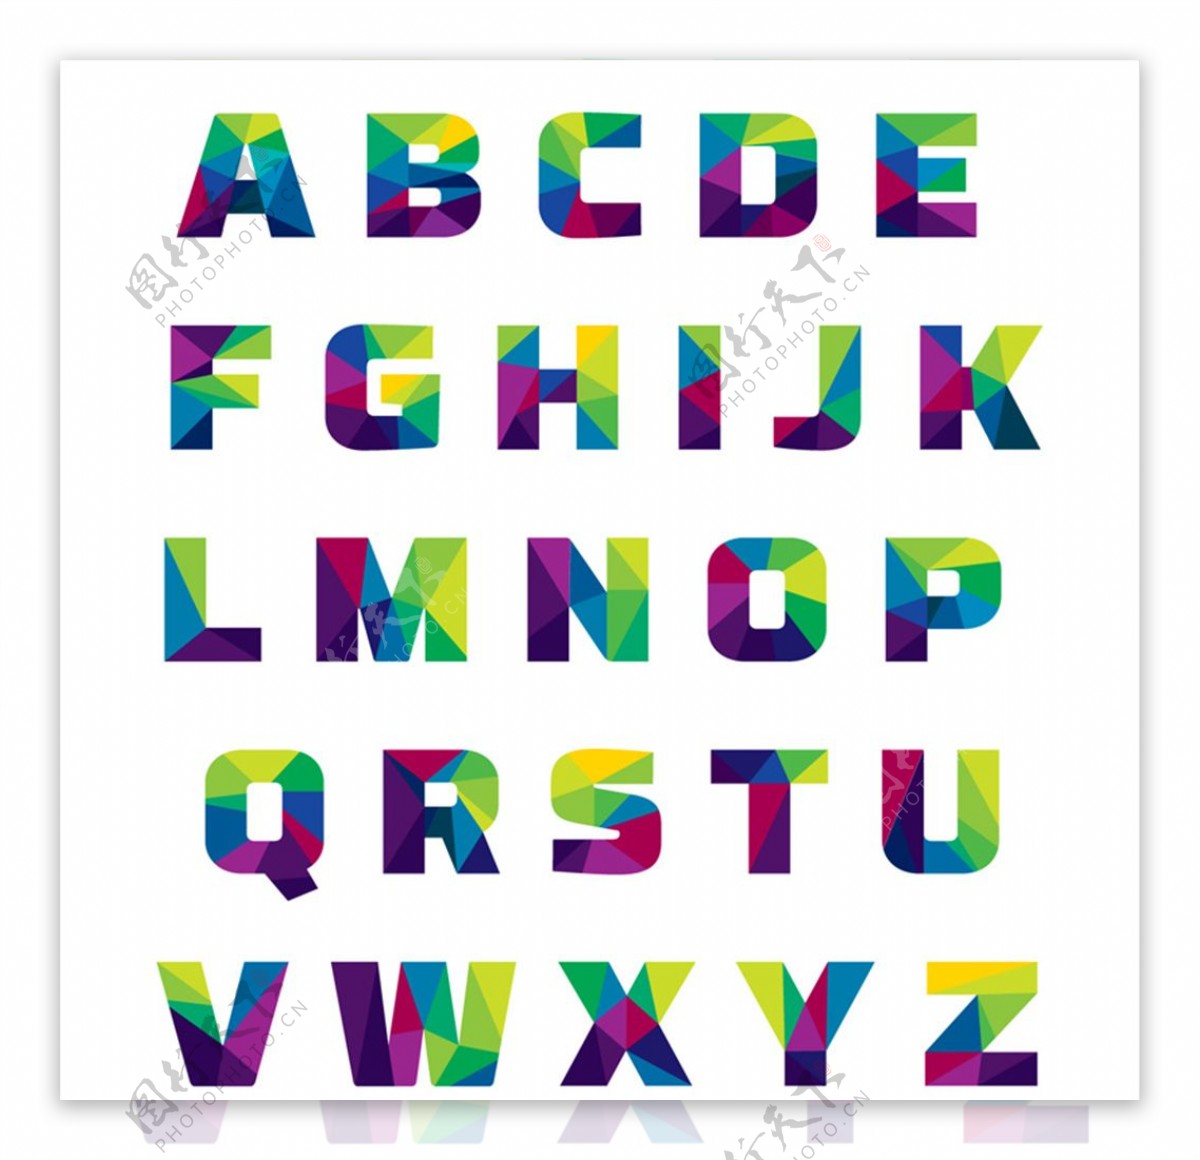 26个抽象拼色字母设计矢量素材